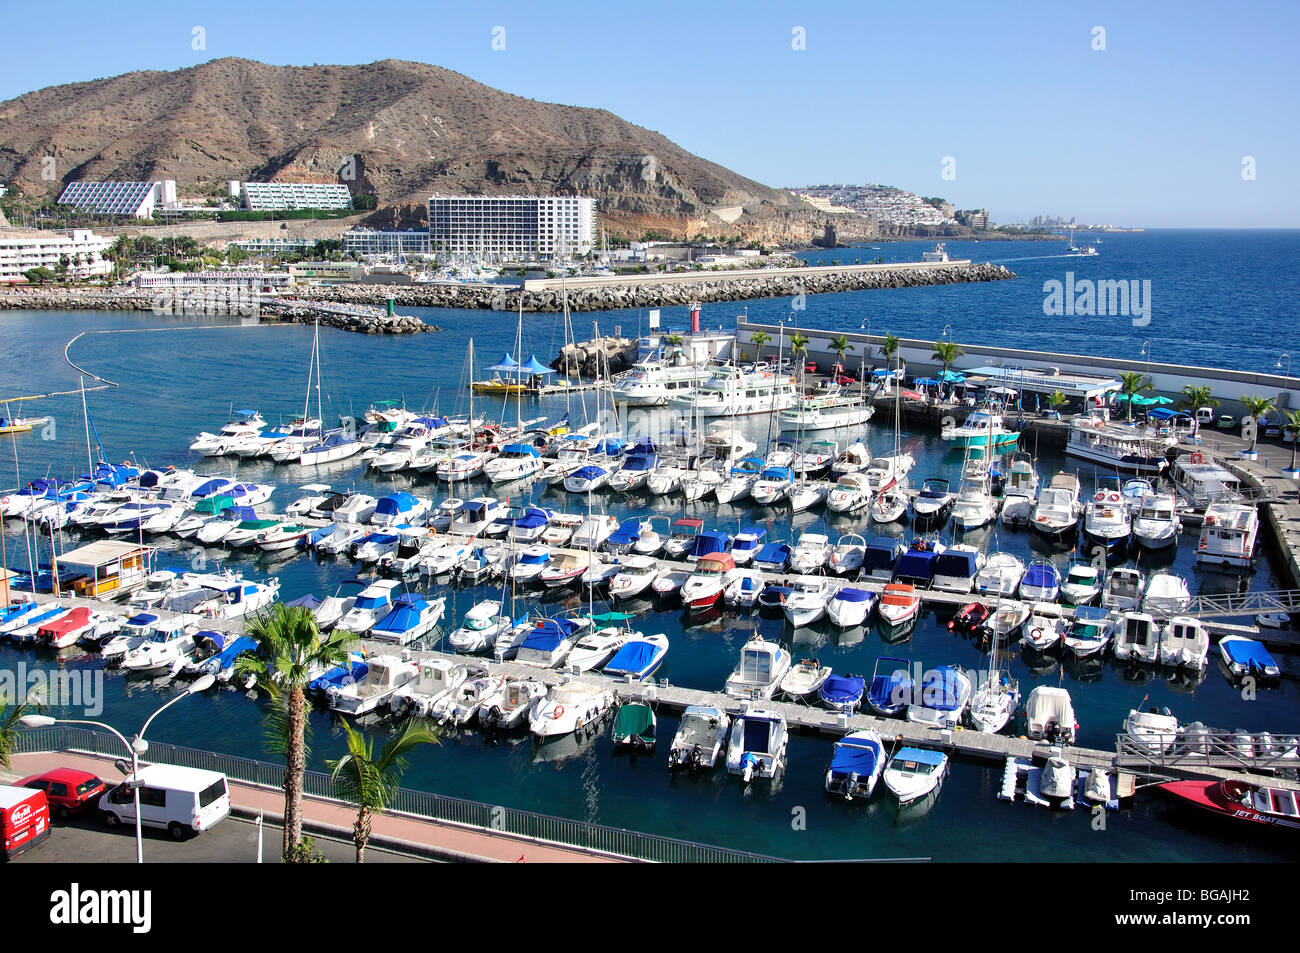 Marina view, Puerto Rico, Mogan Municipality, Gran Canaria, Canary Islands, Spain Stock Photo